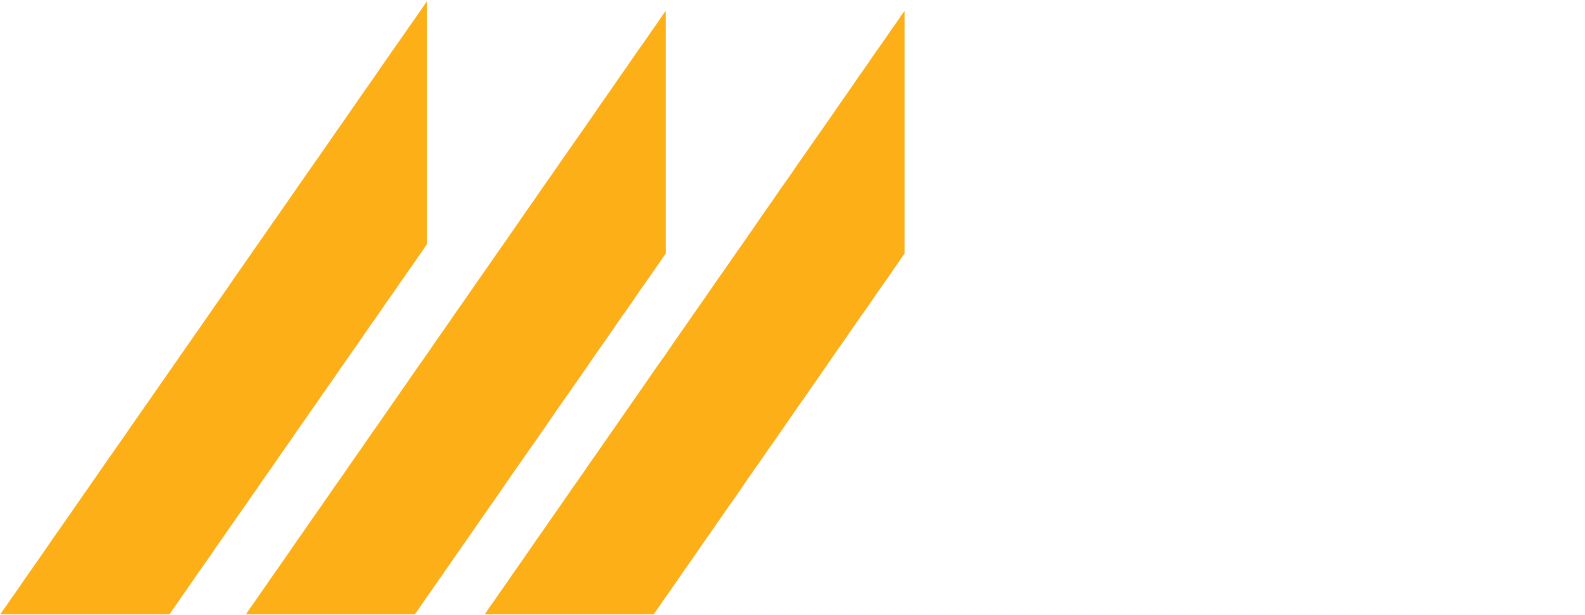 DRDGOLD logo for dark backgrounds (transparent PNG)